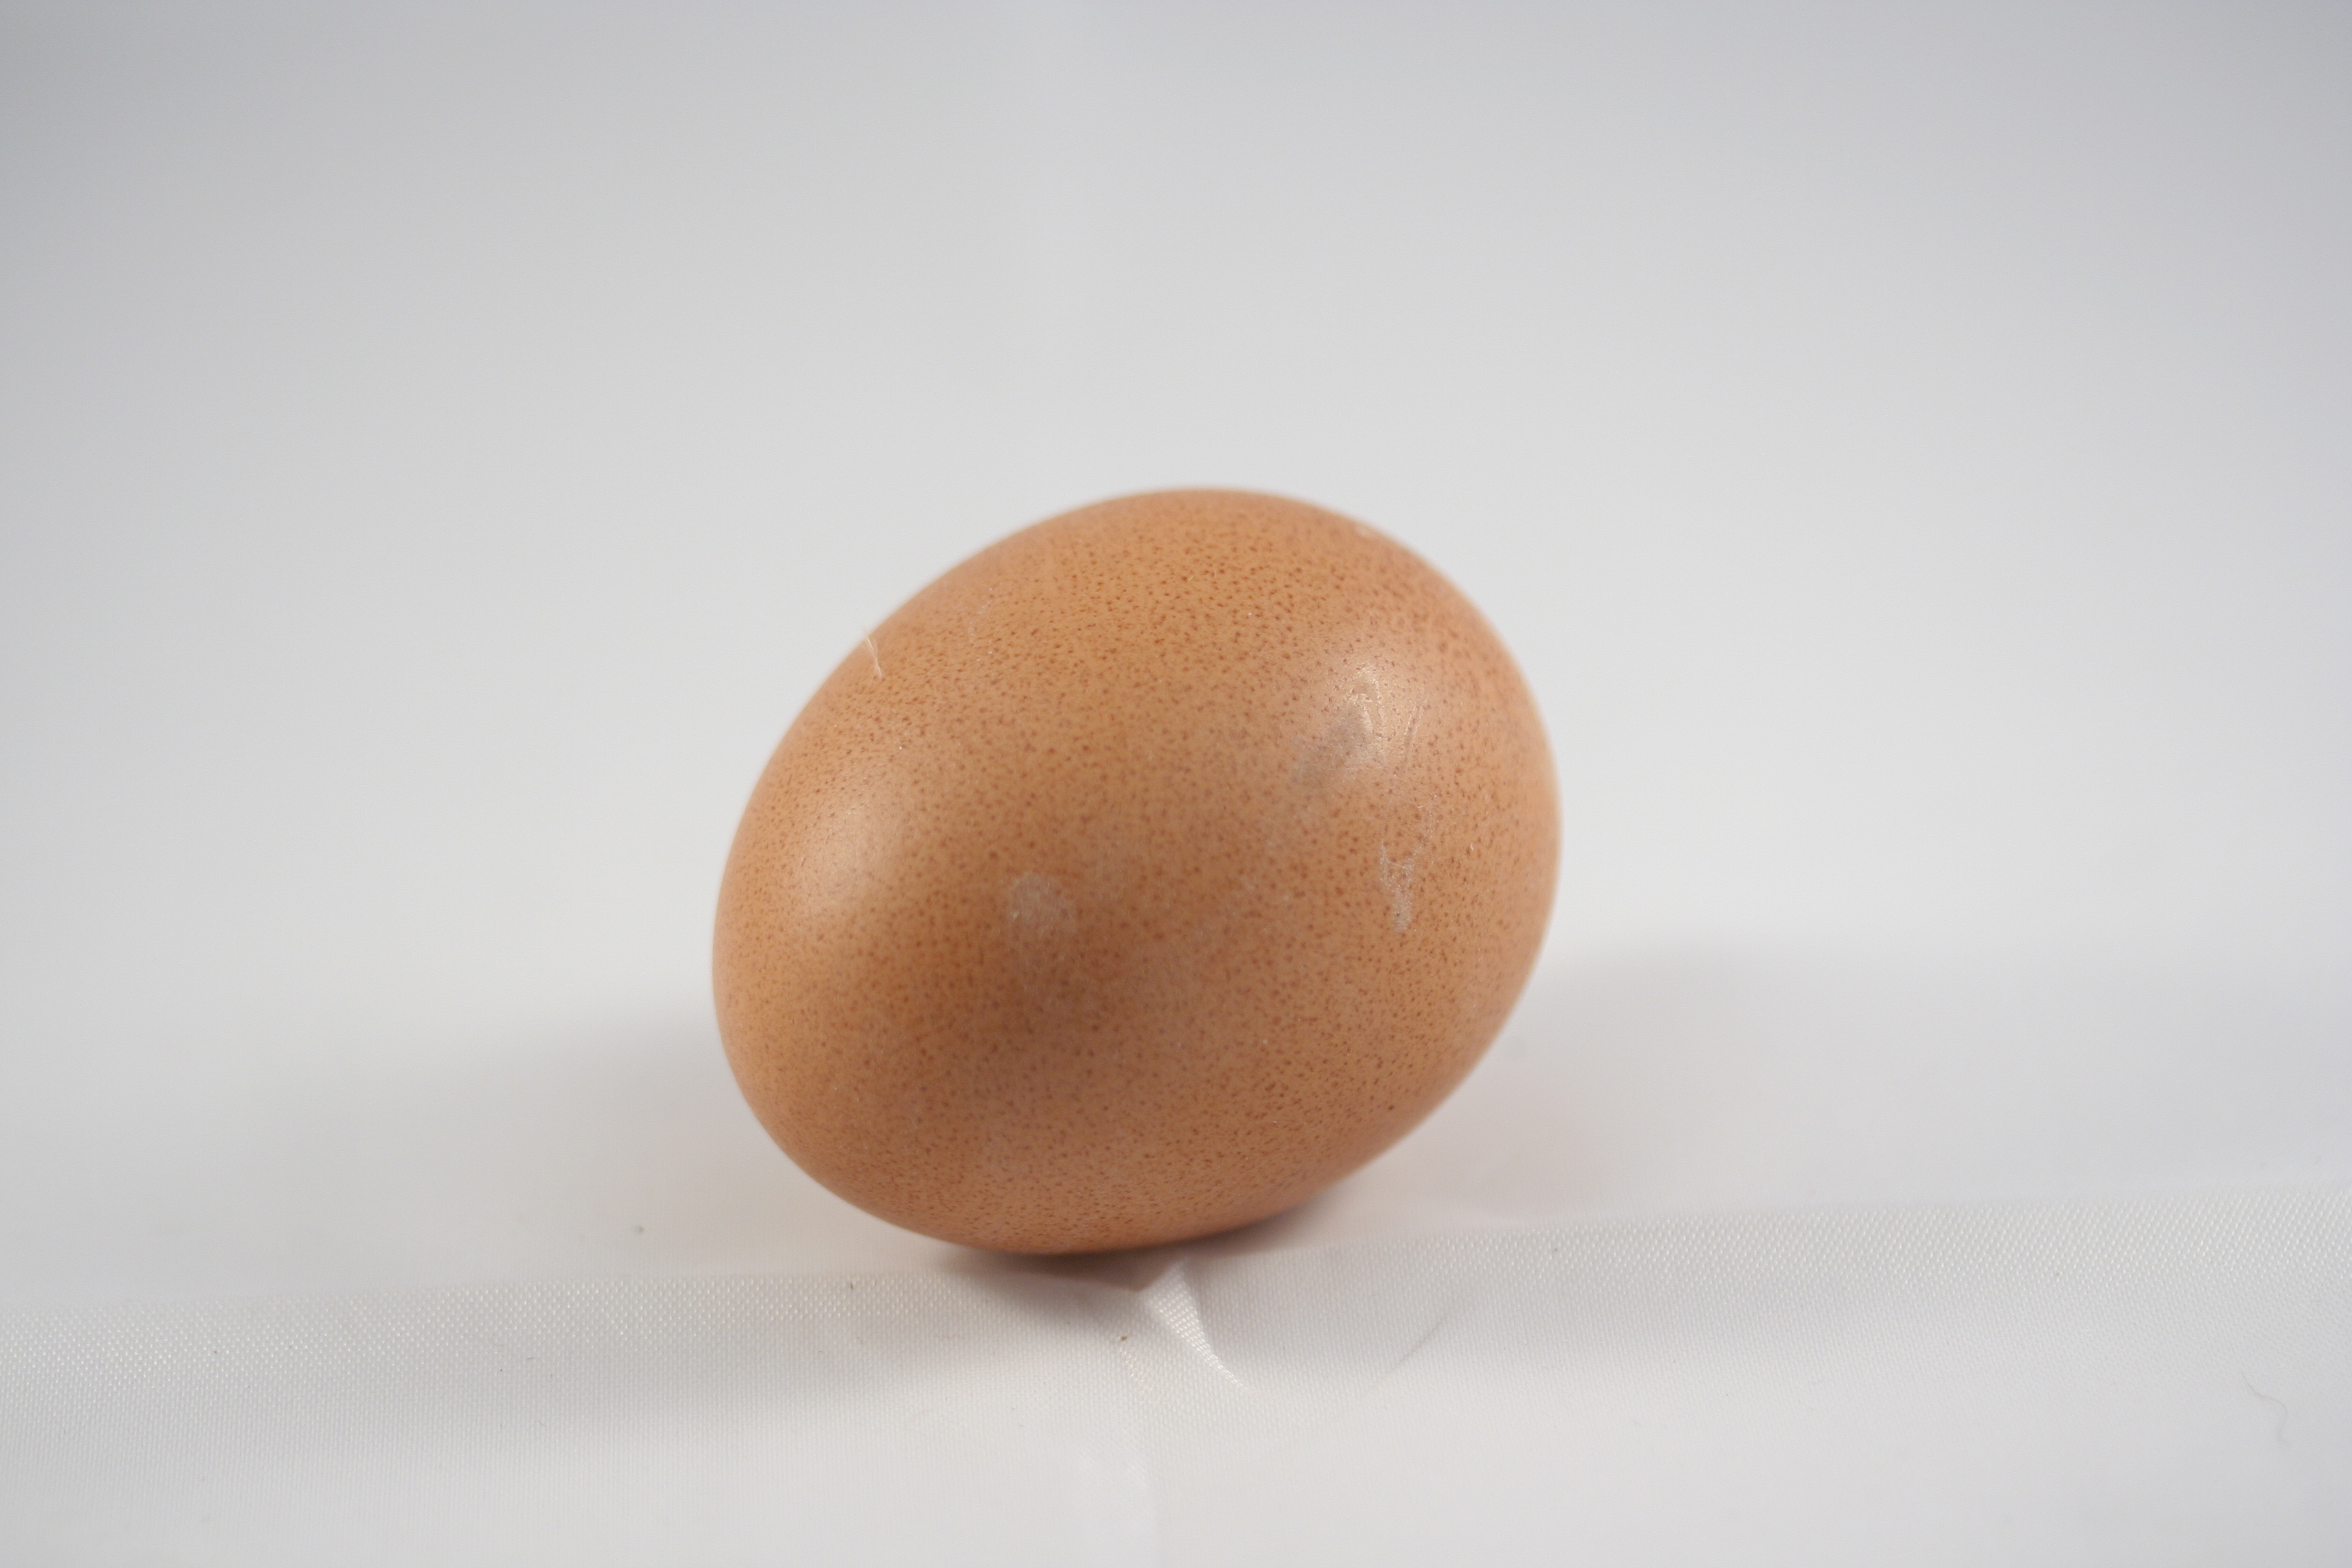 File:One Egg.jpg